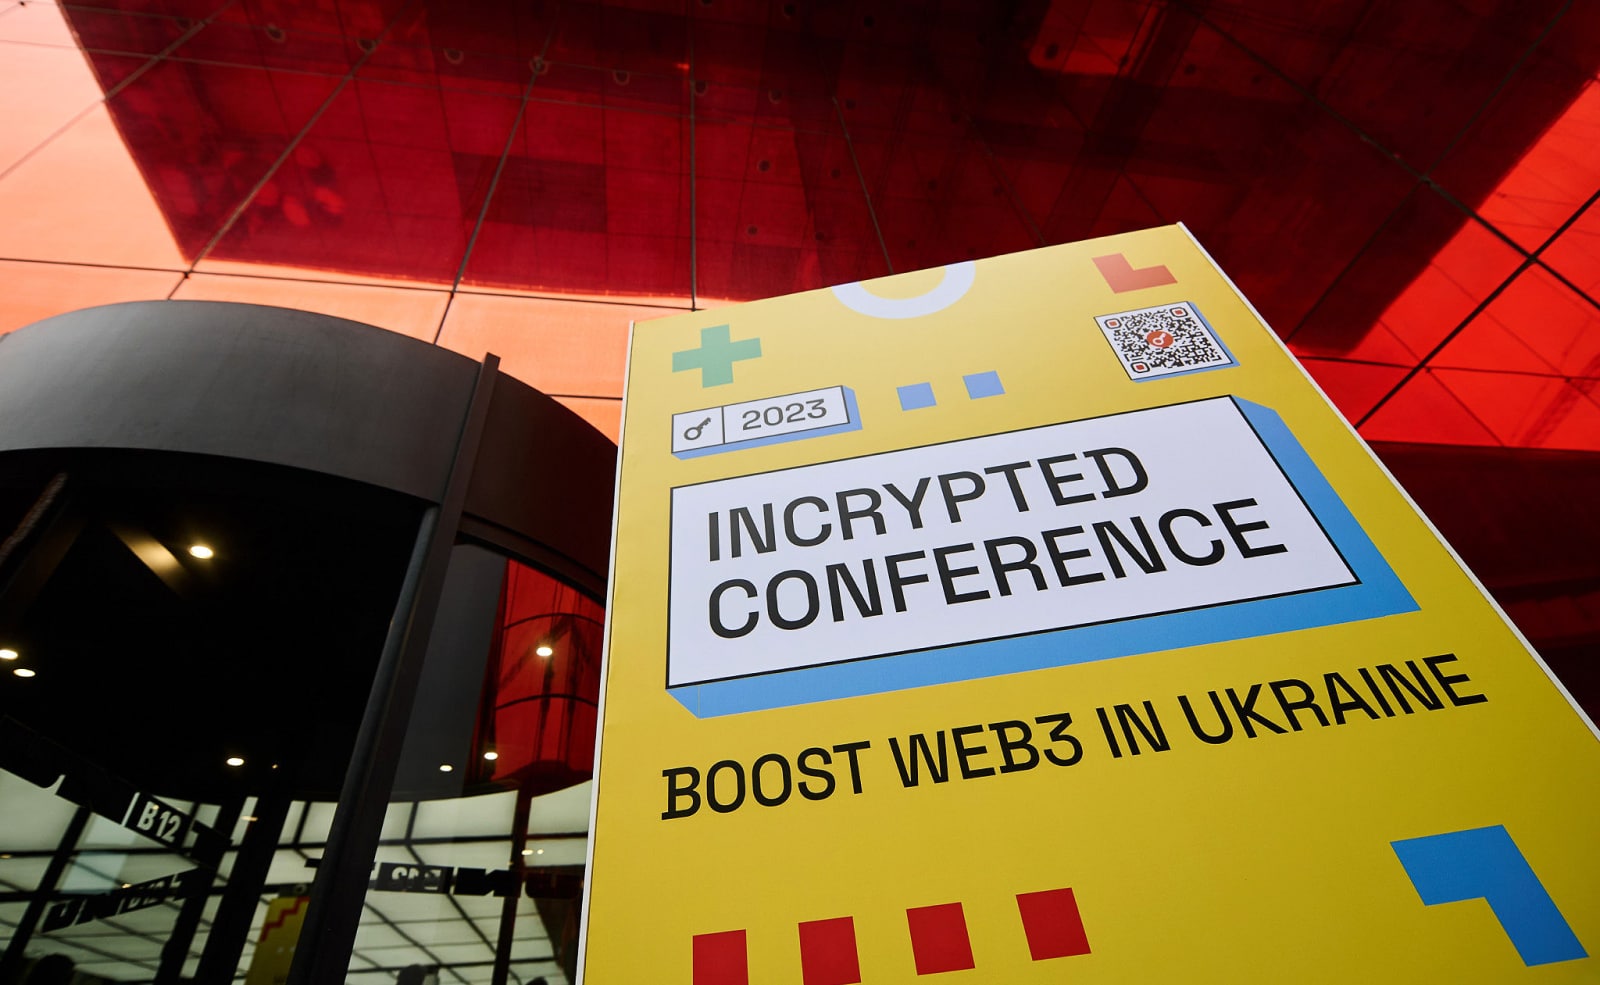 Incrypted Conference 2023 собрала в Киеве больше 1000 криптоэнтузиастов, включая представителей власти и стартапов. Заглавный коллаж новости.